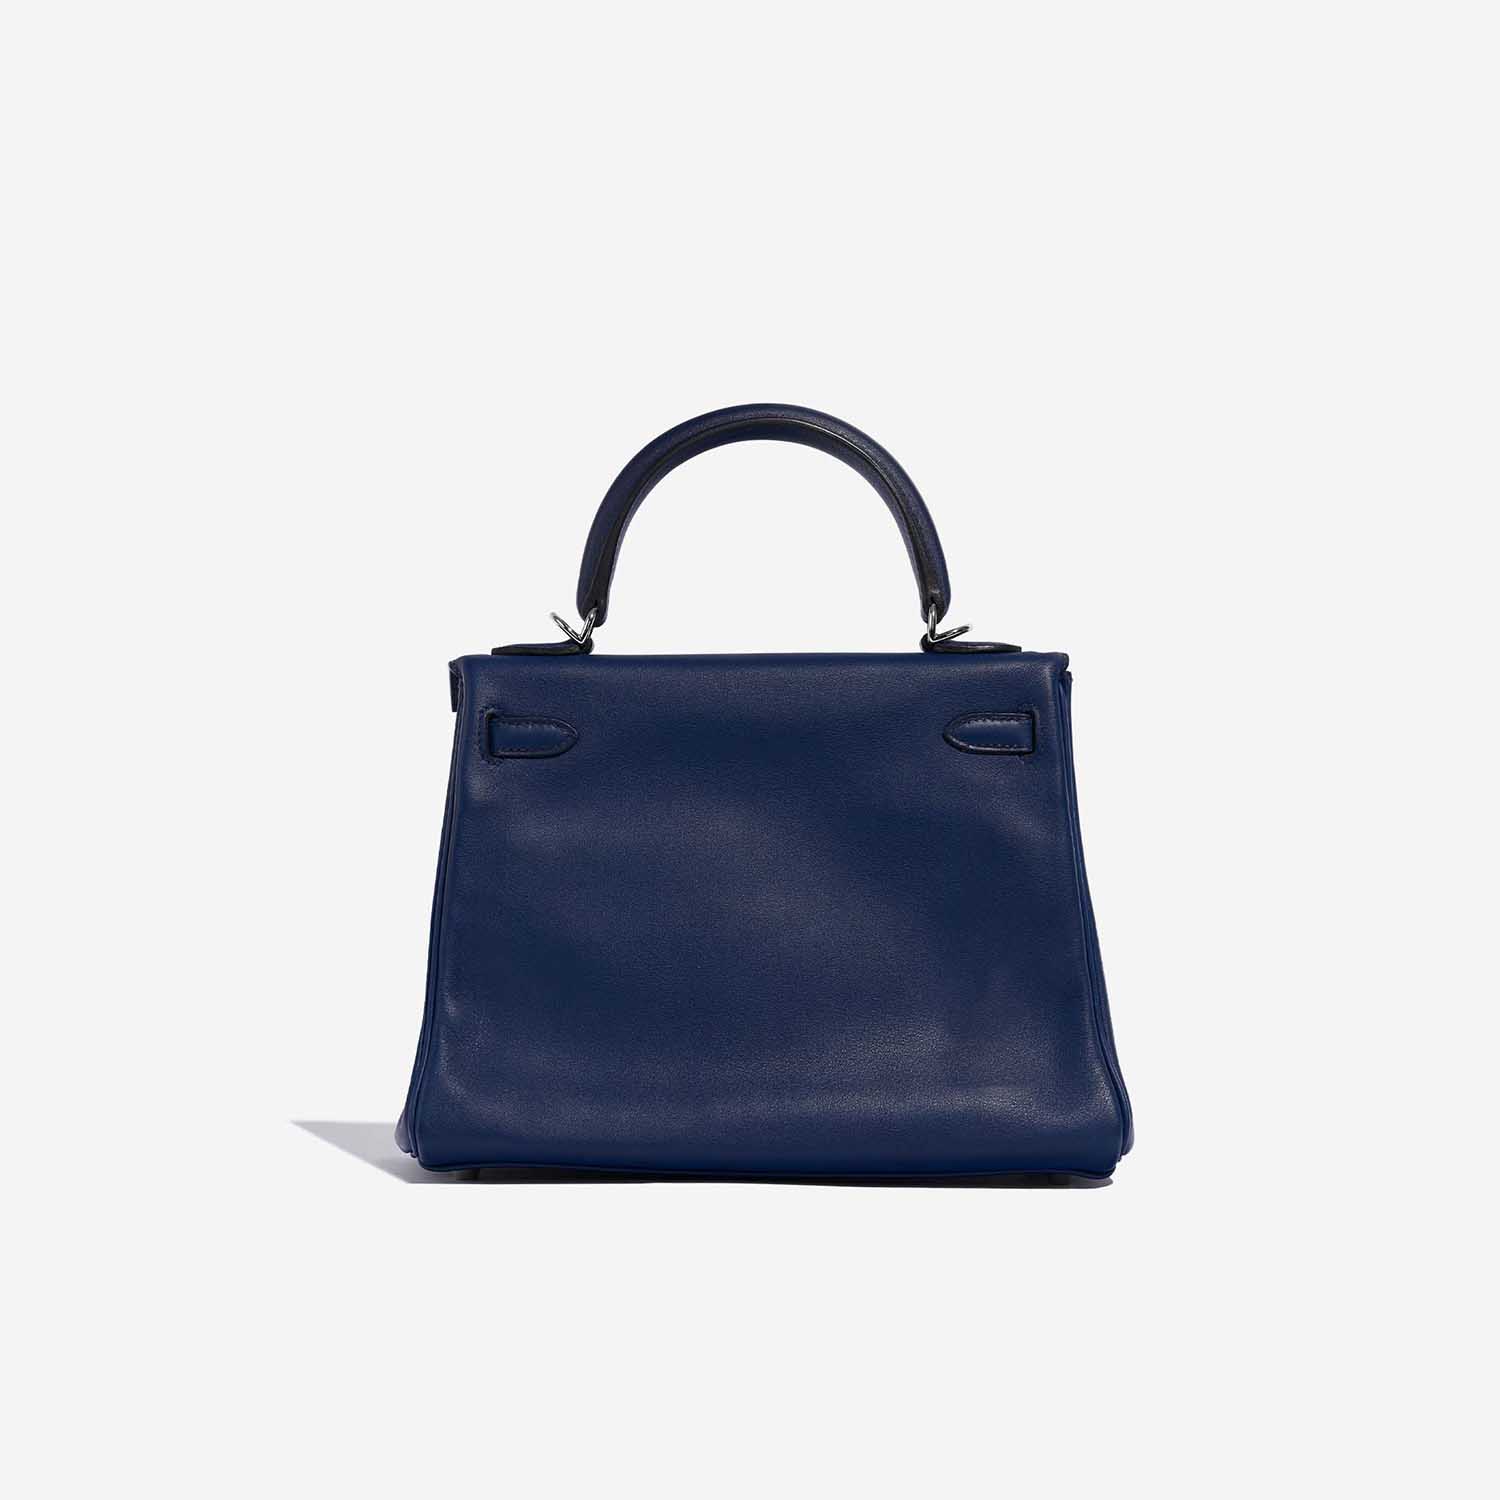 Sac Hermès d'occasion Kelly 25 Swift Bleu Saphir Bleu Dos | Vendez votre sac de créateur sur Saclab.com